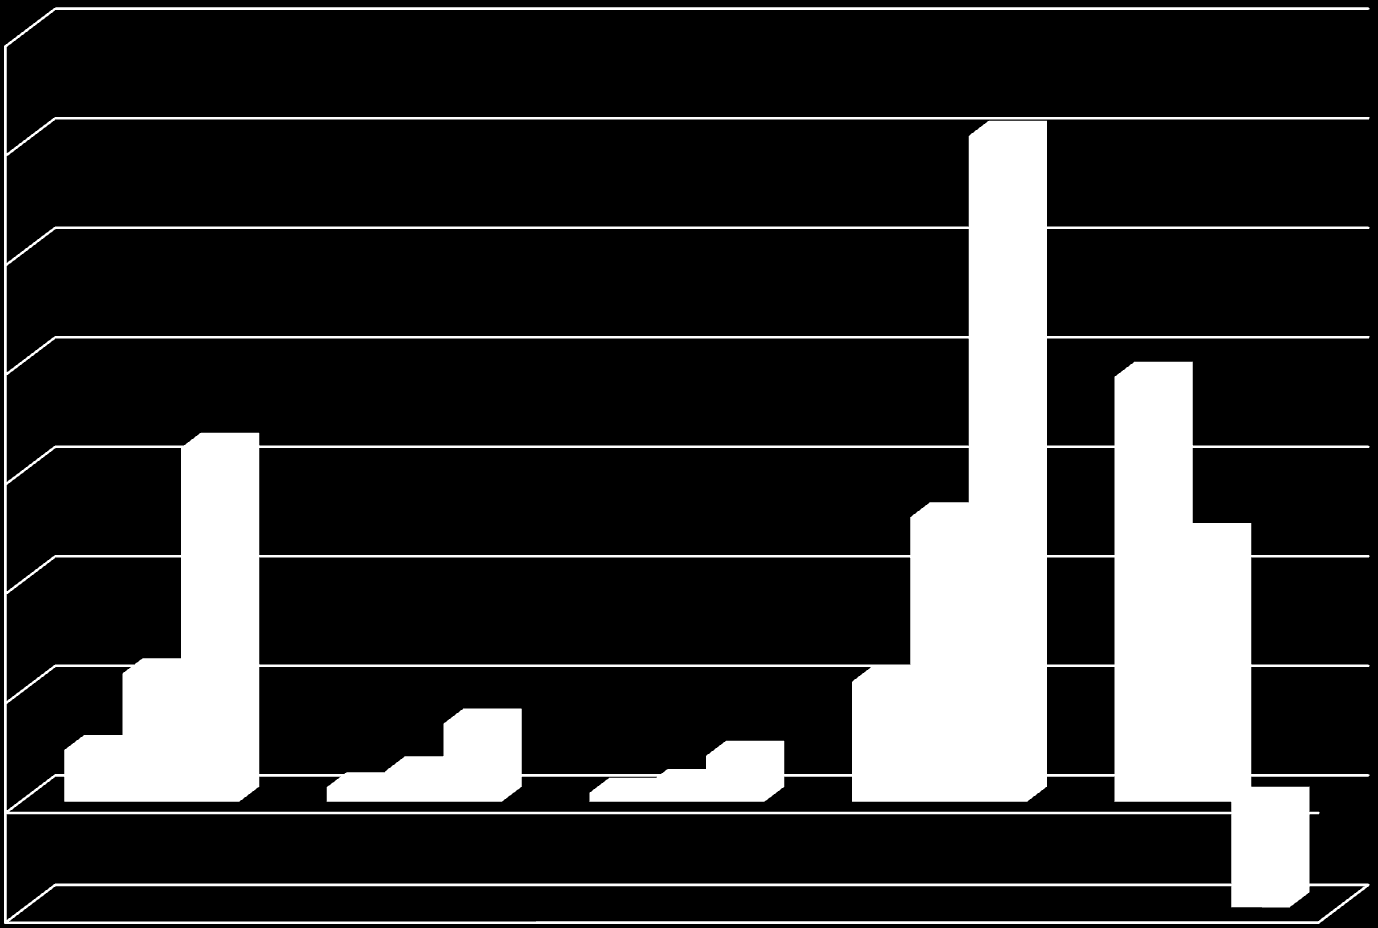 Contribuição ao Crescimento da Renda Mundial 1990-2011 (em %) 140,0 120,0 121,6 100,0 80,0 60,0 64,6